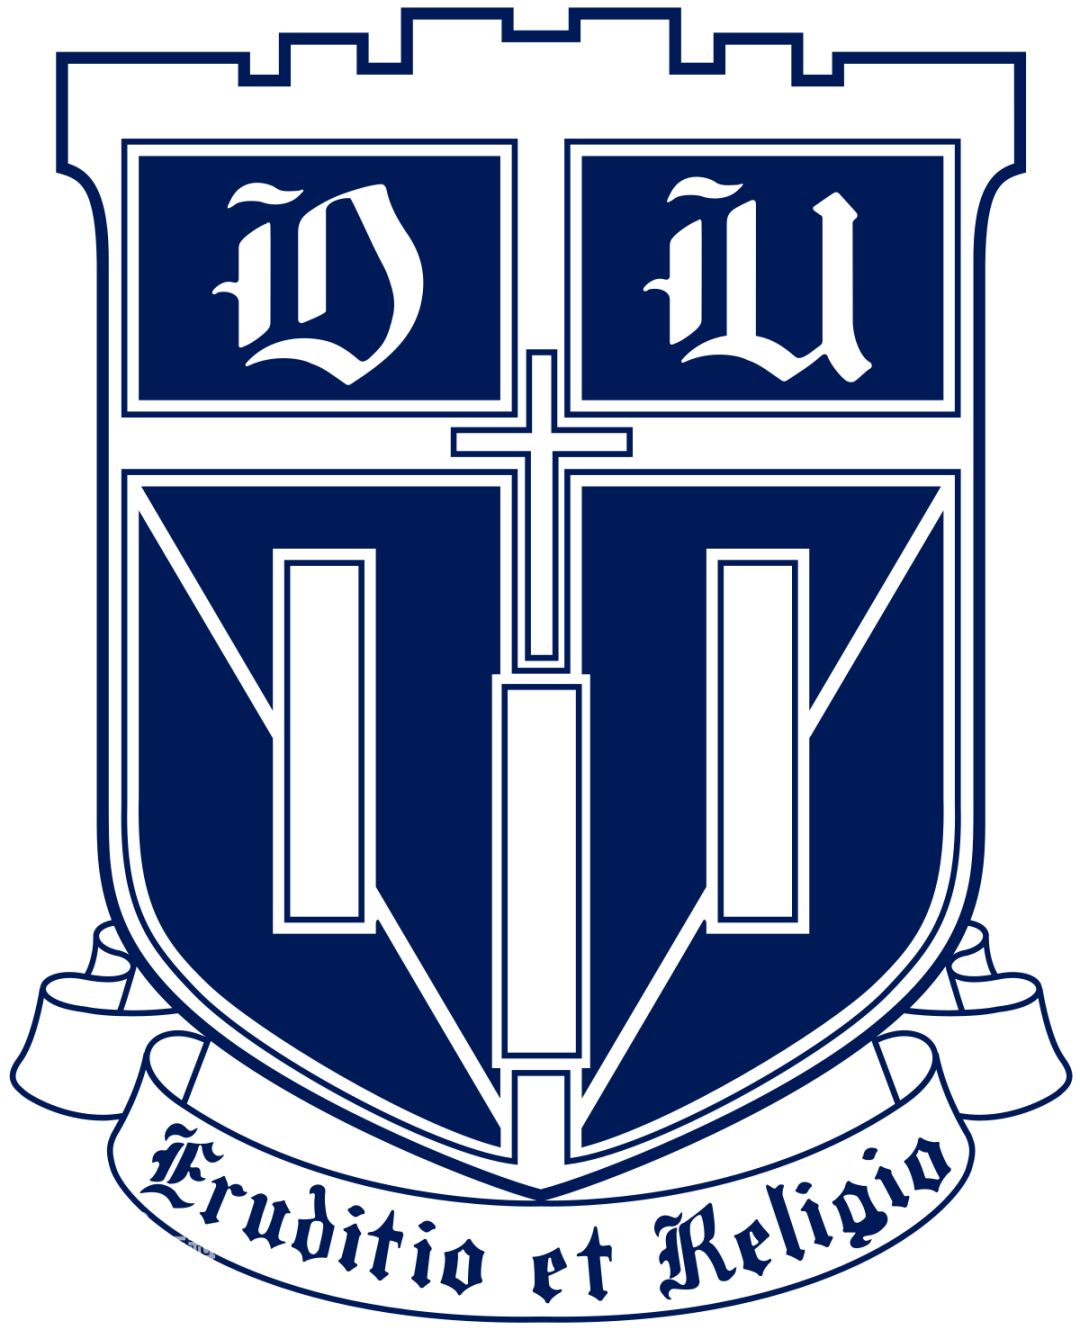 Duke University badge